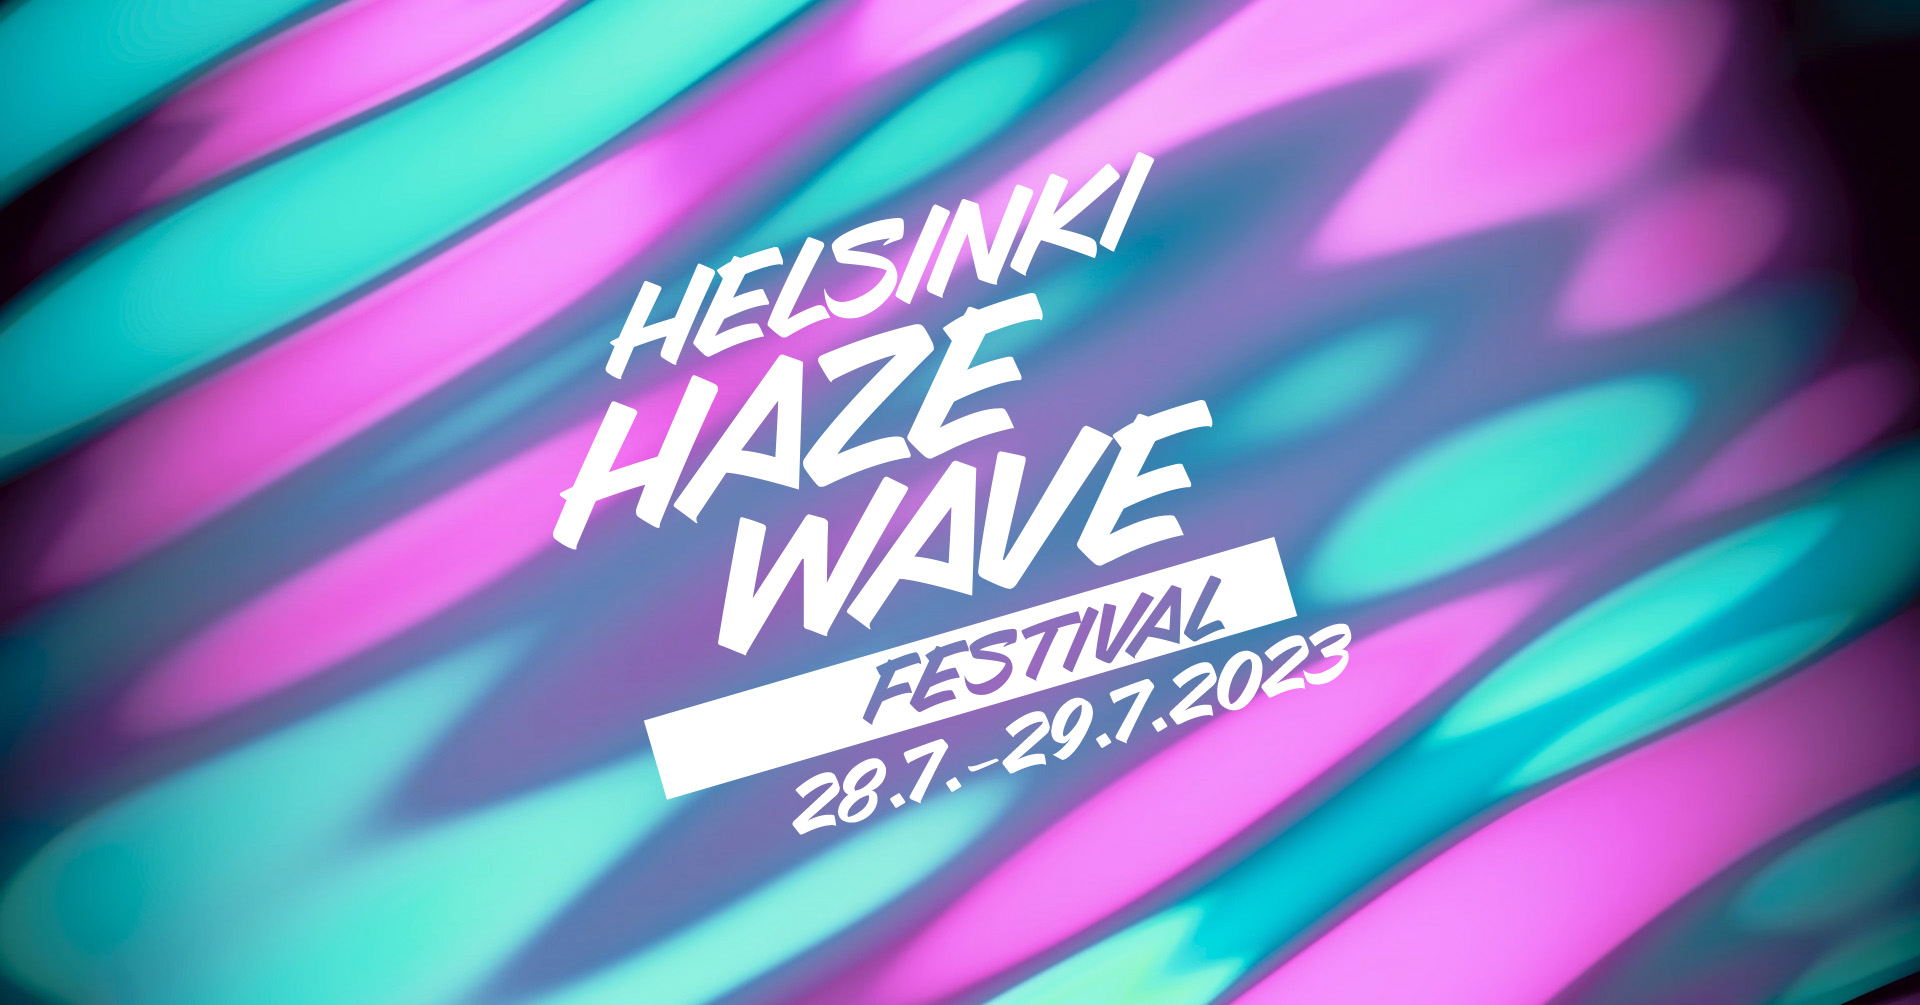 Helsinki Haze Wave Festival 2023